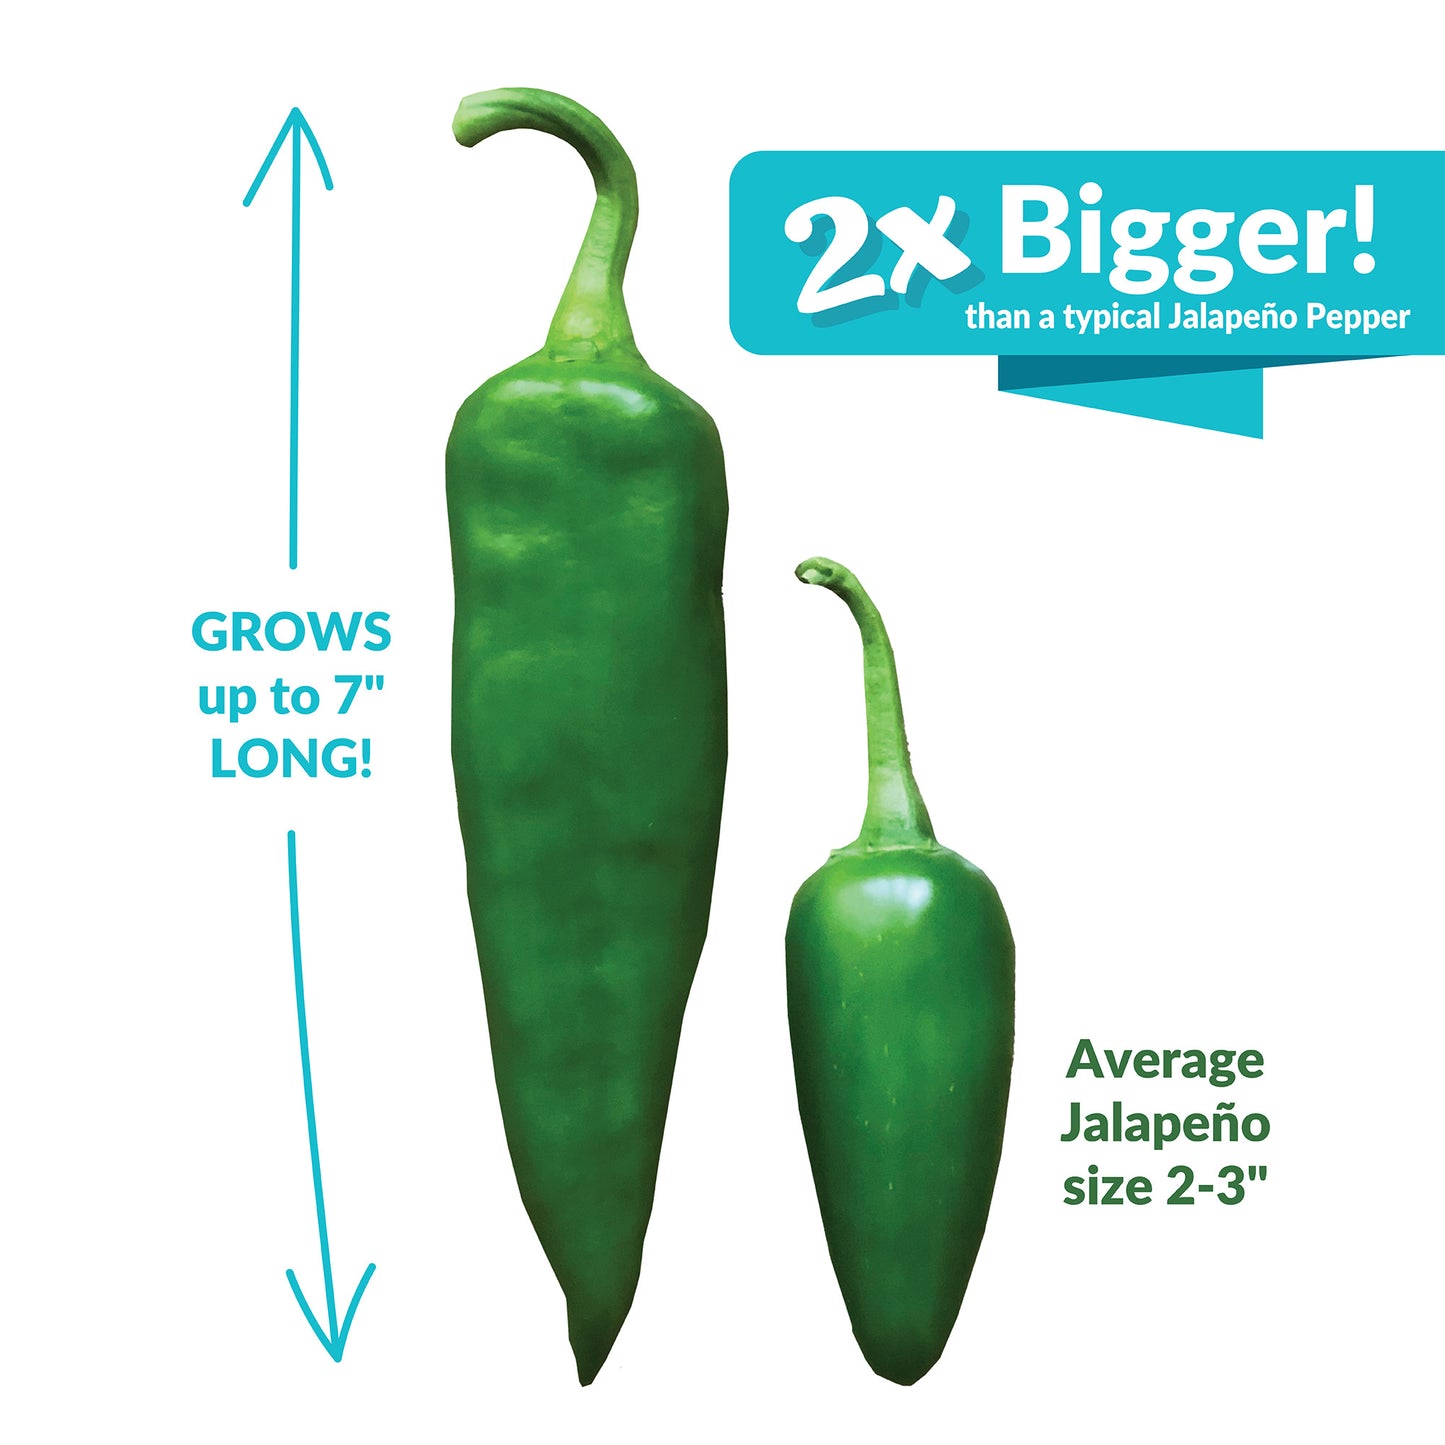 Super Nacho Jalapeno Pepper Seeds, Hot